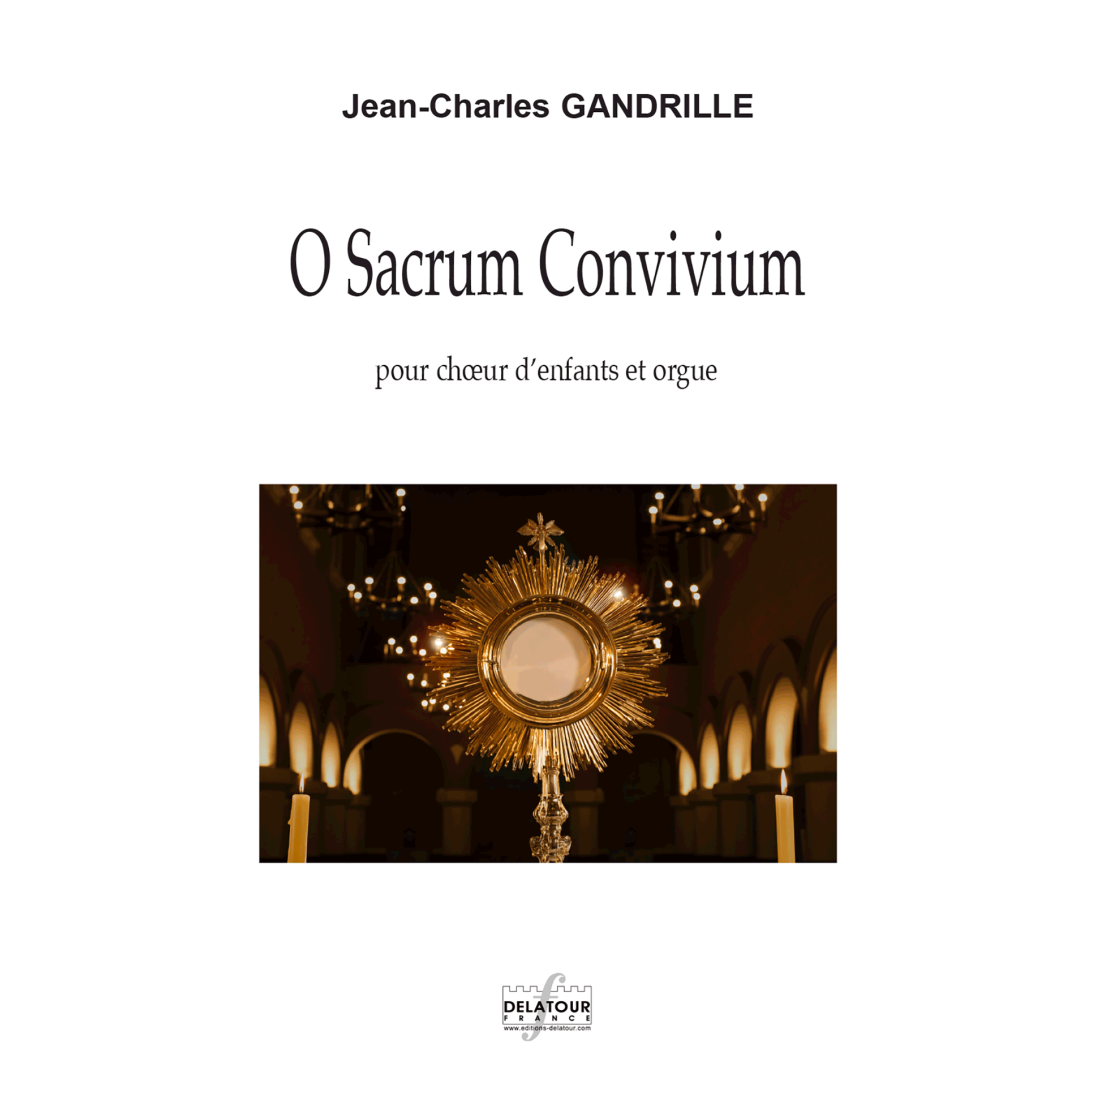 O Sacrum Convivium for children's choir and organ Kinderchor und Orgel